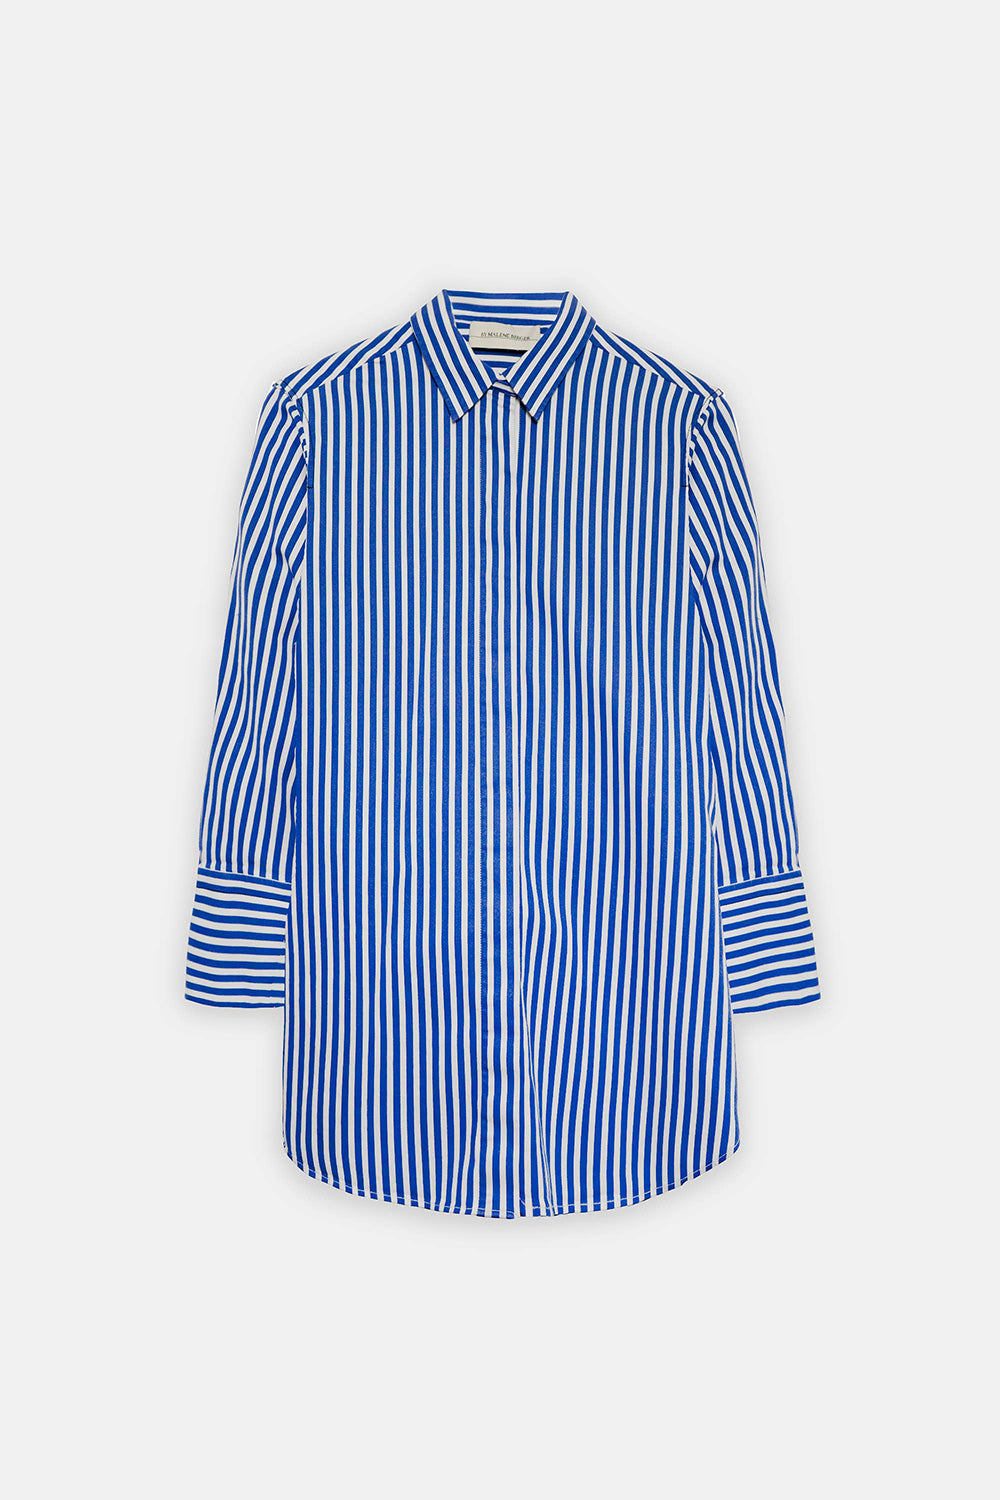 Malene Birger Pre-Owned Stripe Long Sleeve Shirt